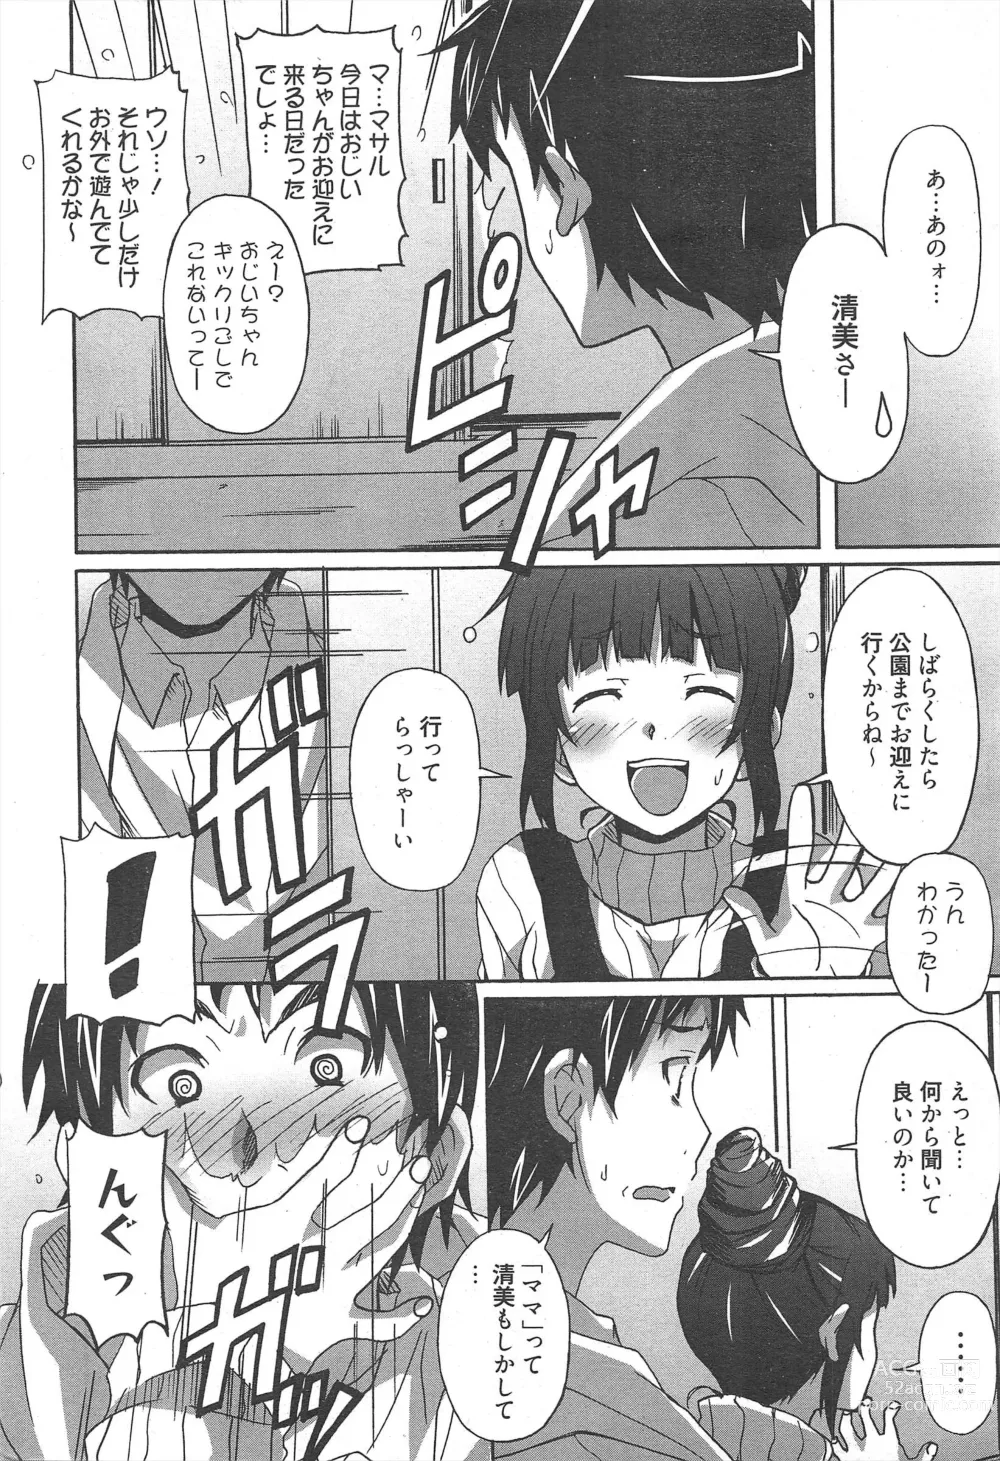 Page 12 of manga Manga Bangaichi 2013-03